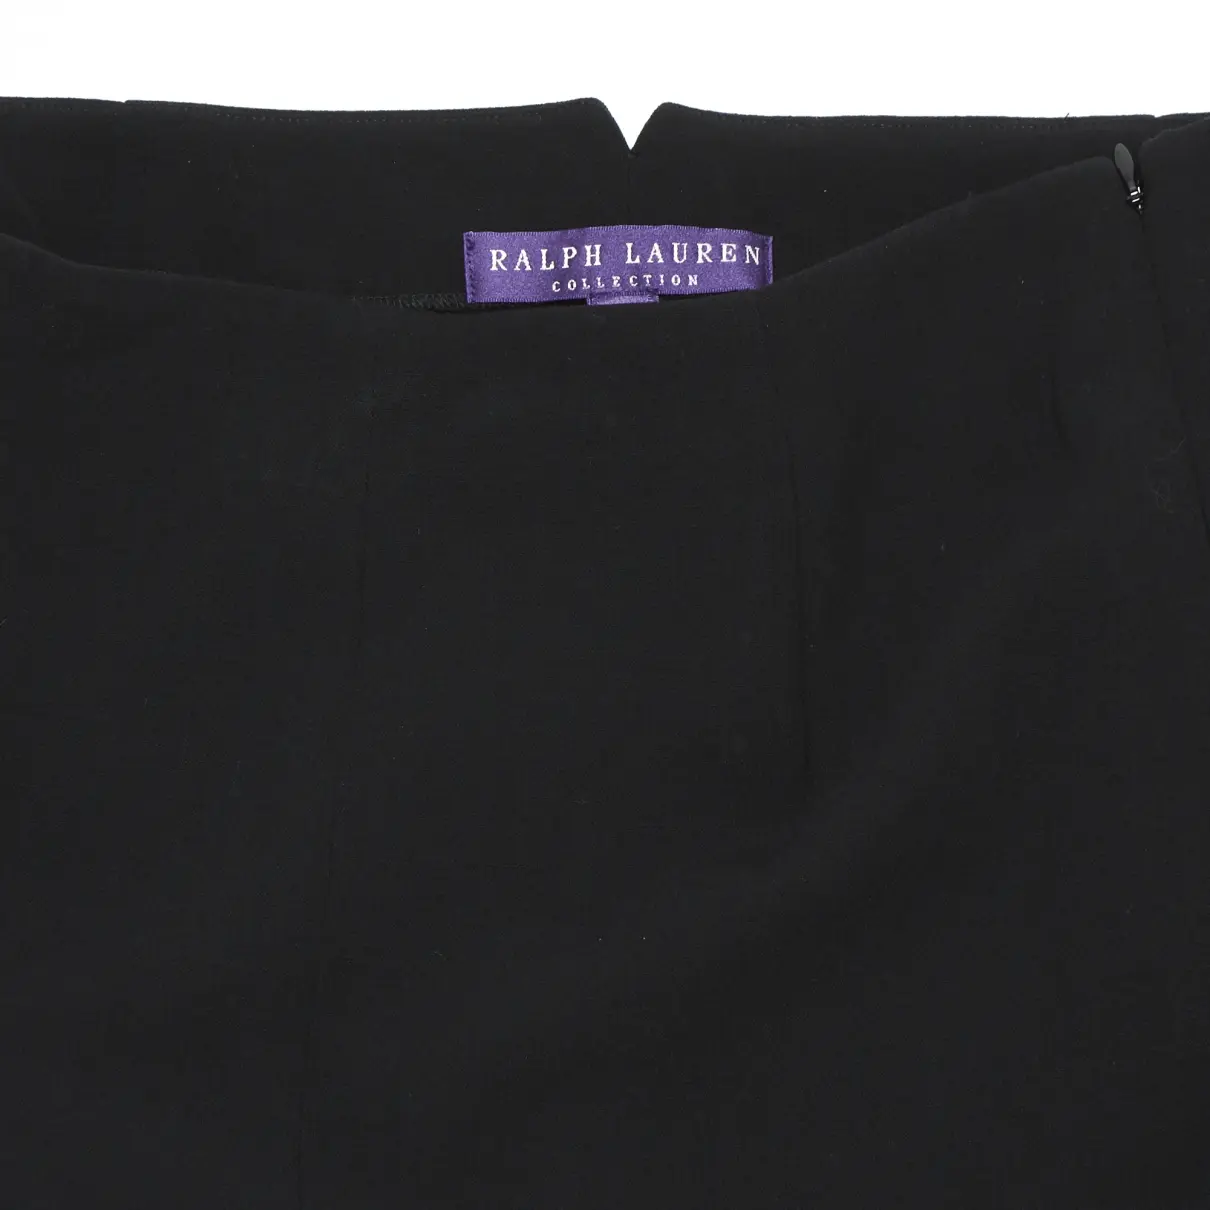 Buy Ralph Lauren Collection Wool straight pants online